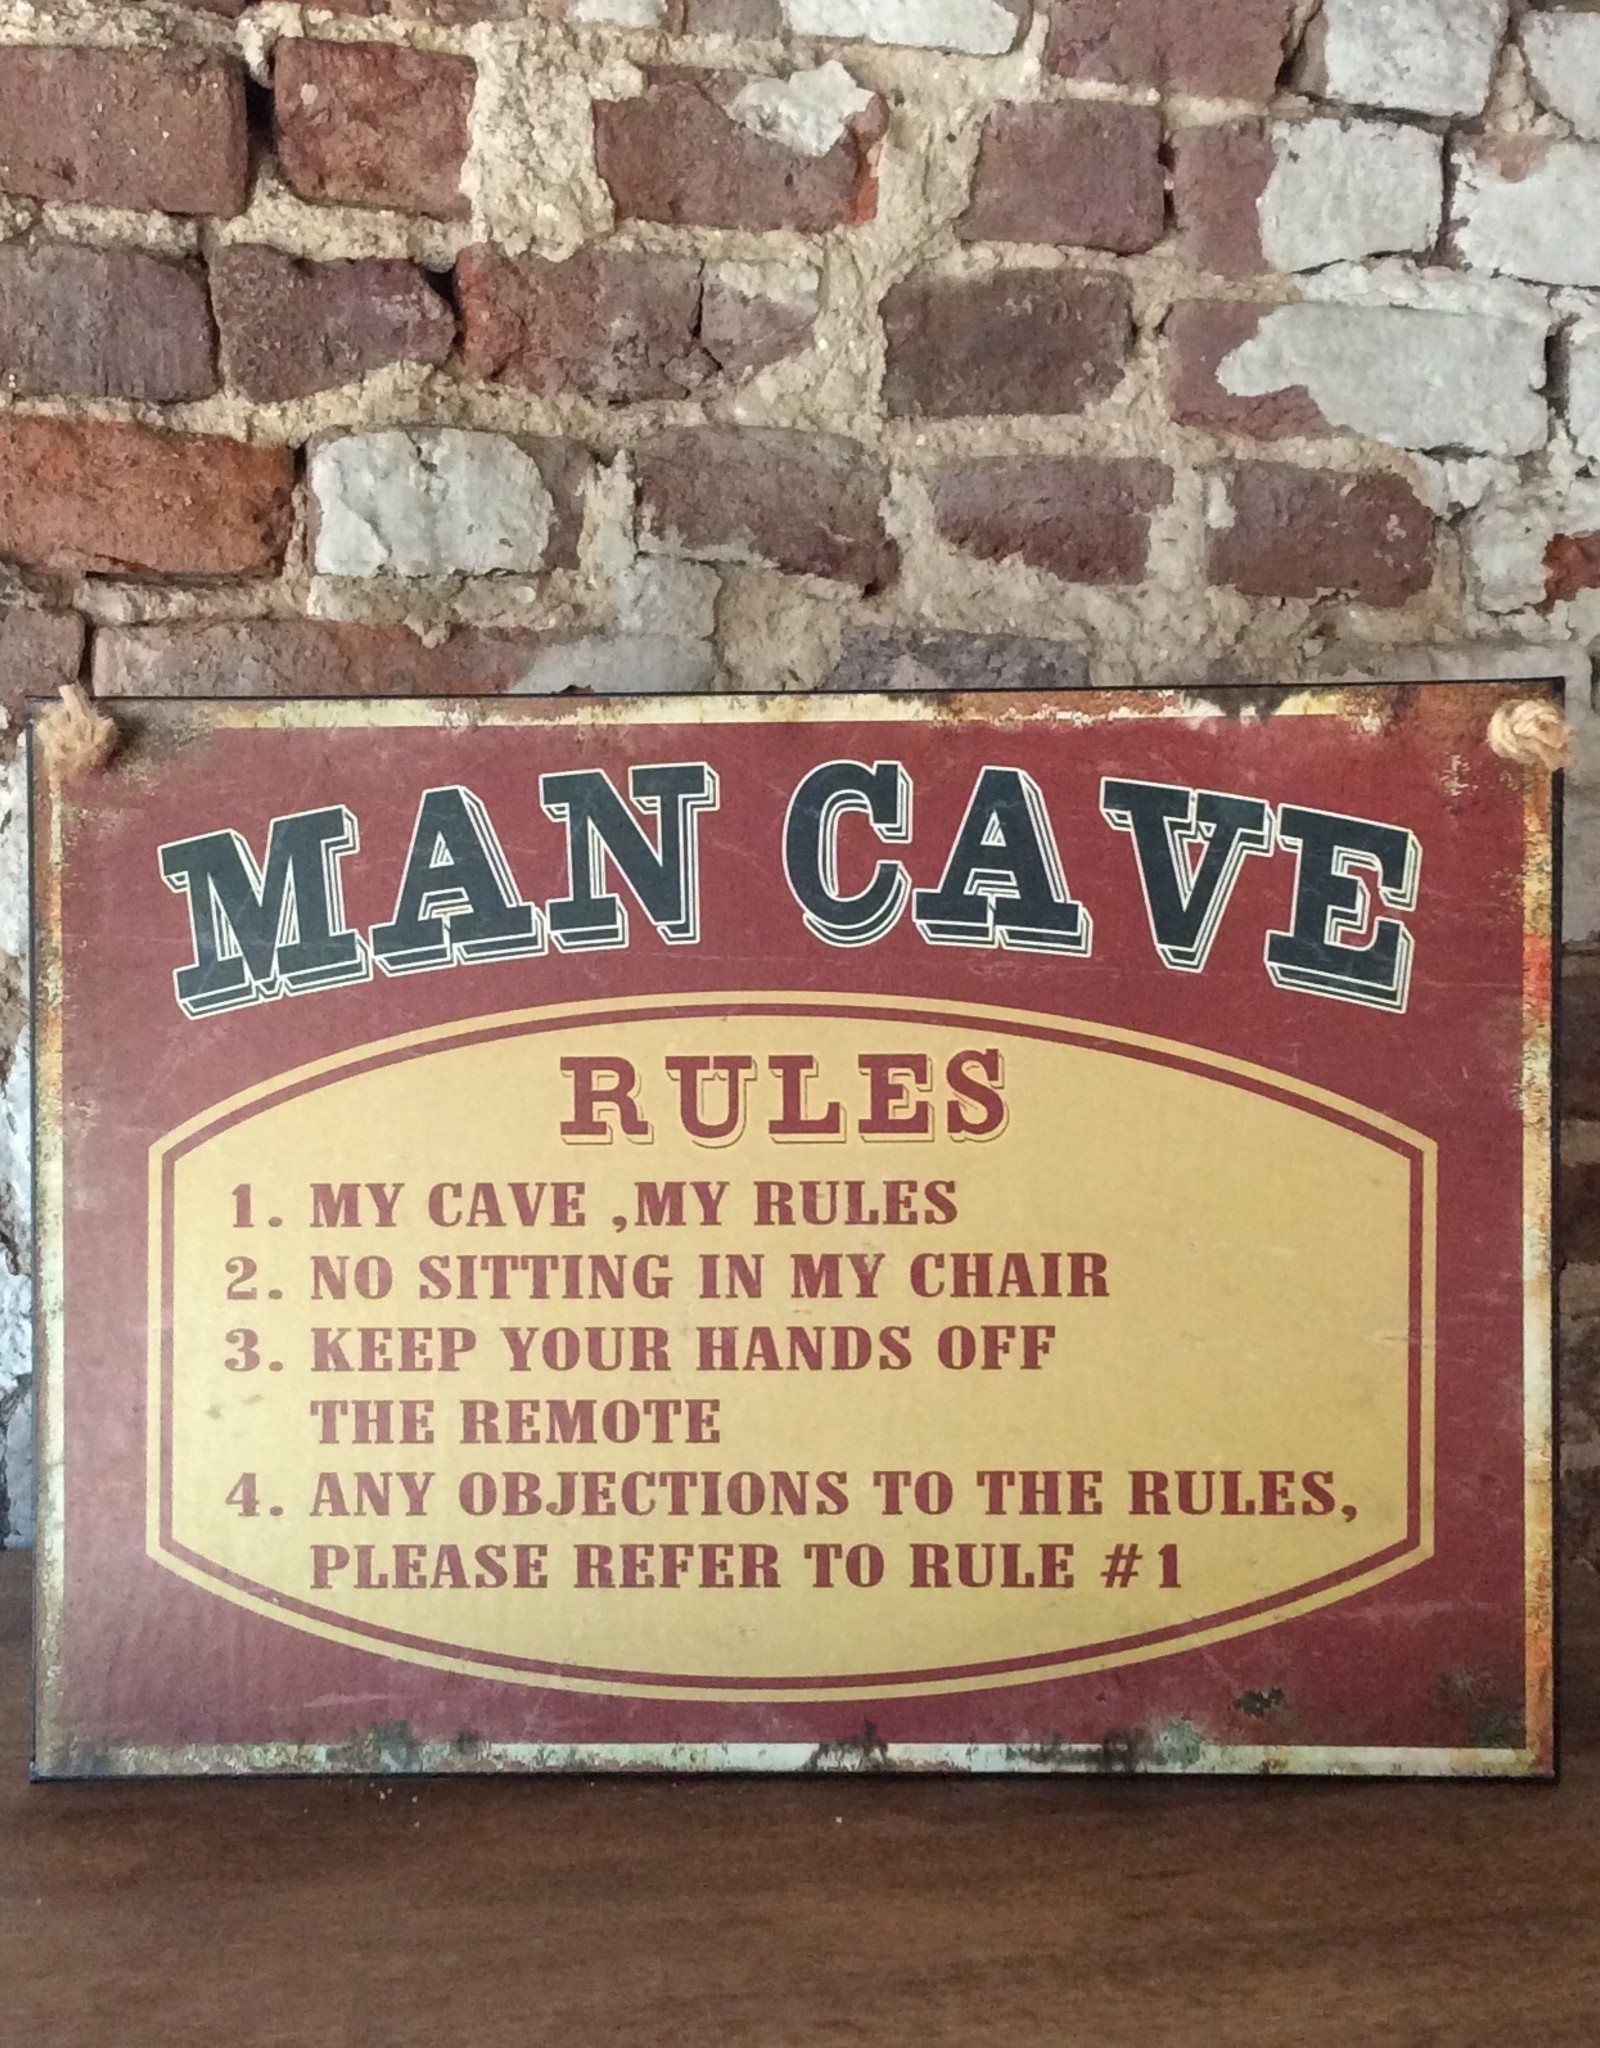 Signe de texte " MAN CAVE RULES"